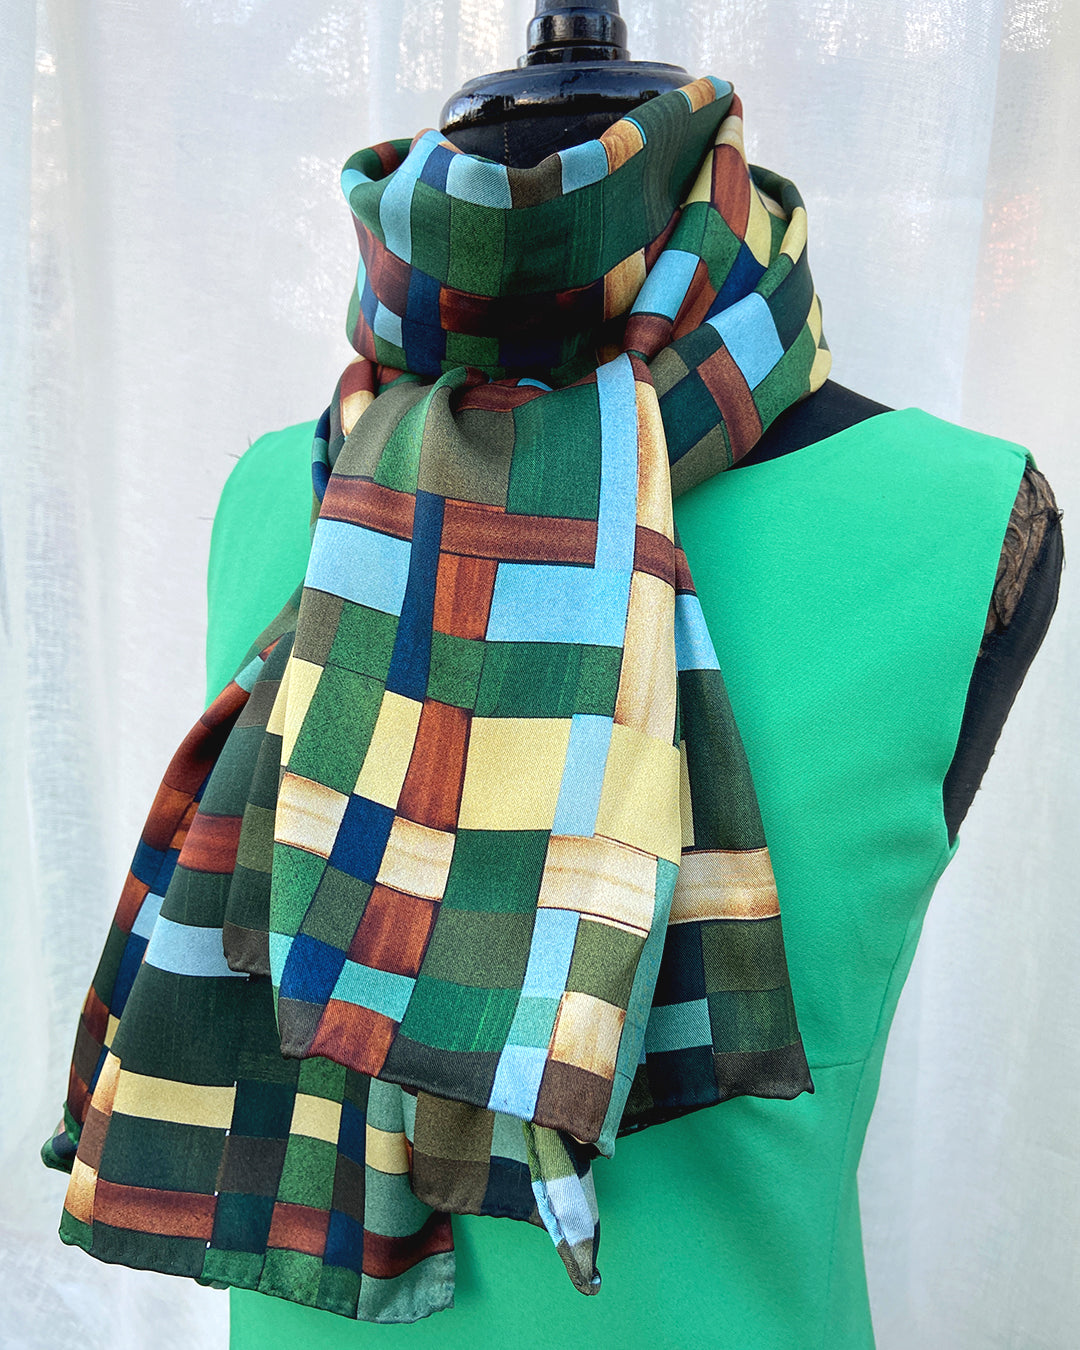 Silketørklæde ternet i grønne, brune og gyldne farver - Aflangt 160 x 65 cm - Super flot artwork design af Susanne Schjerning for HAZEL Cph - 